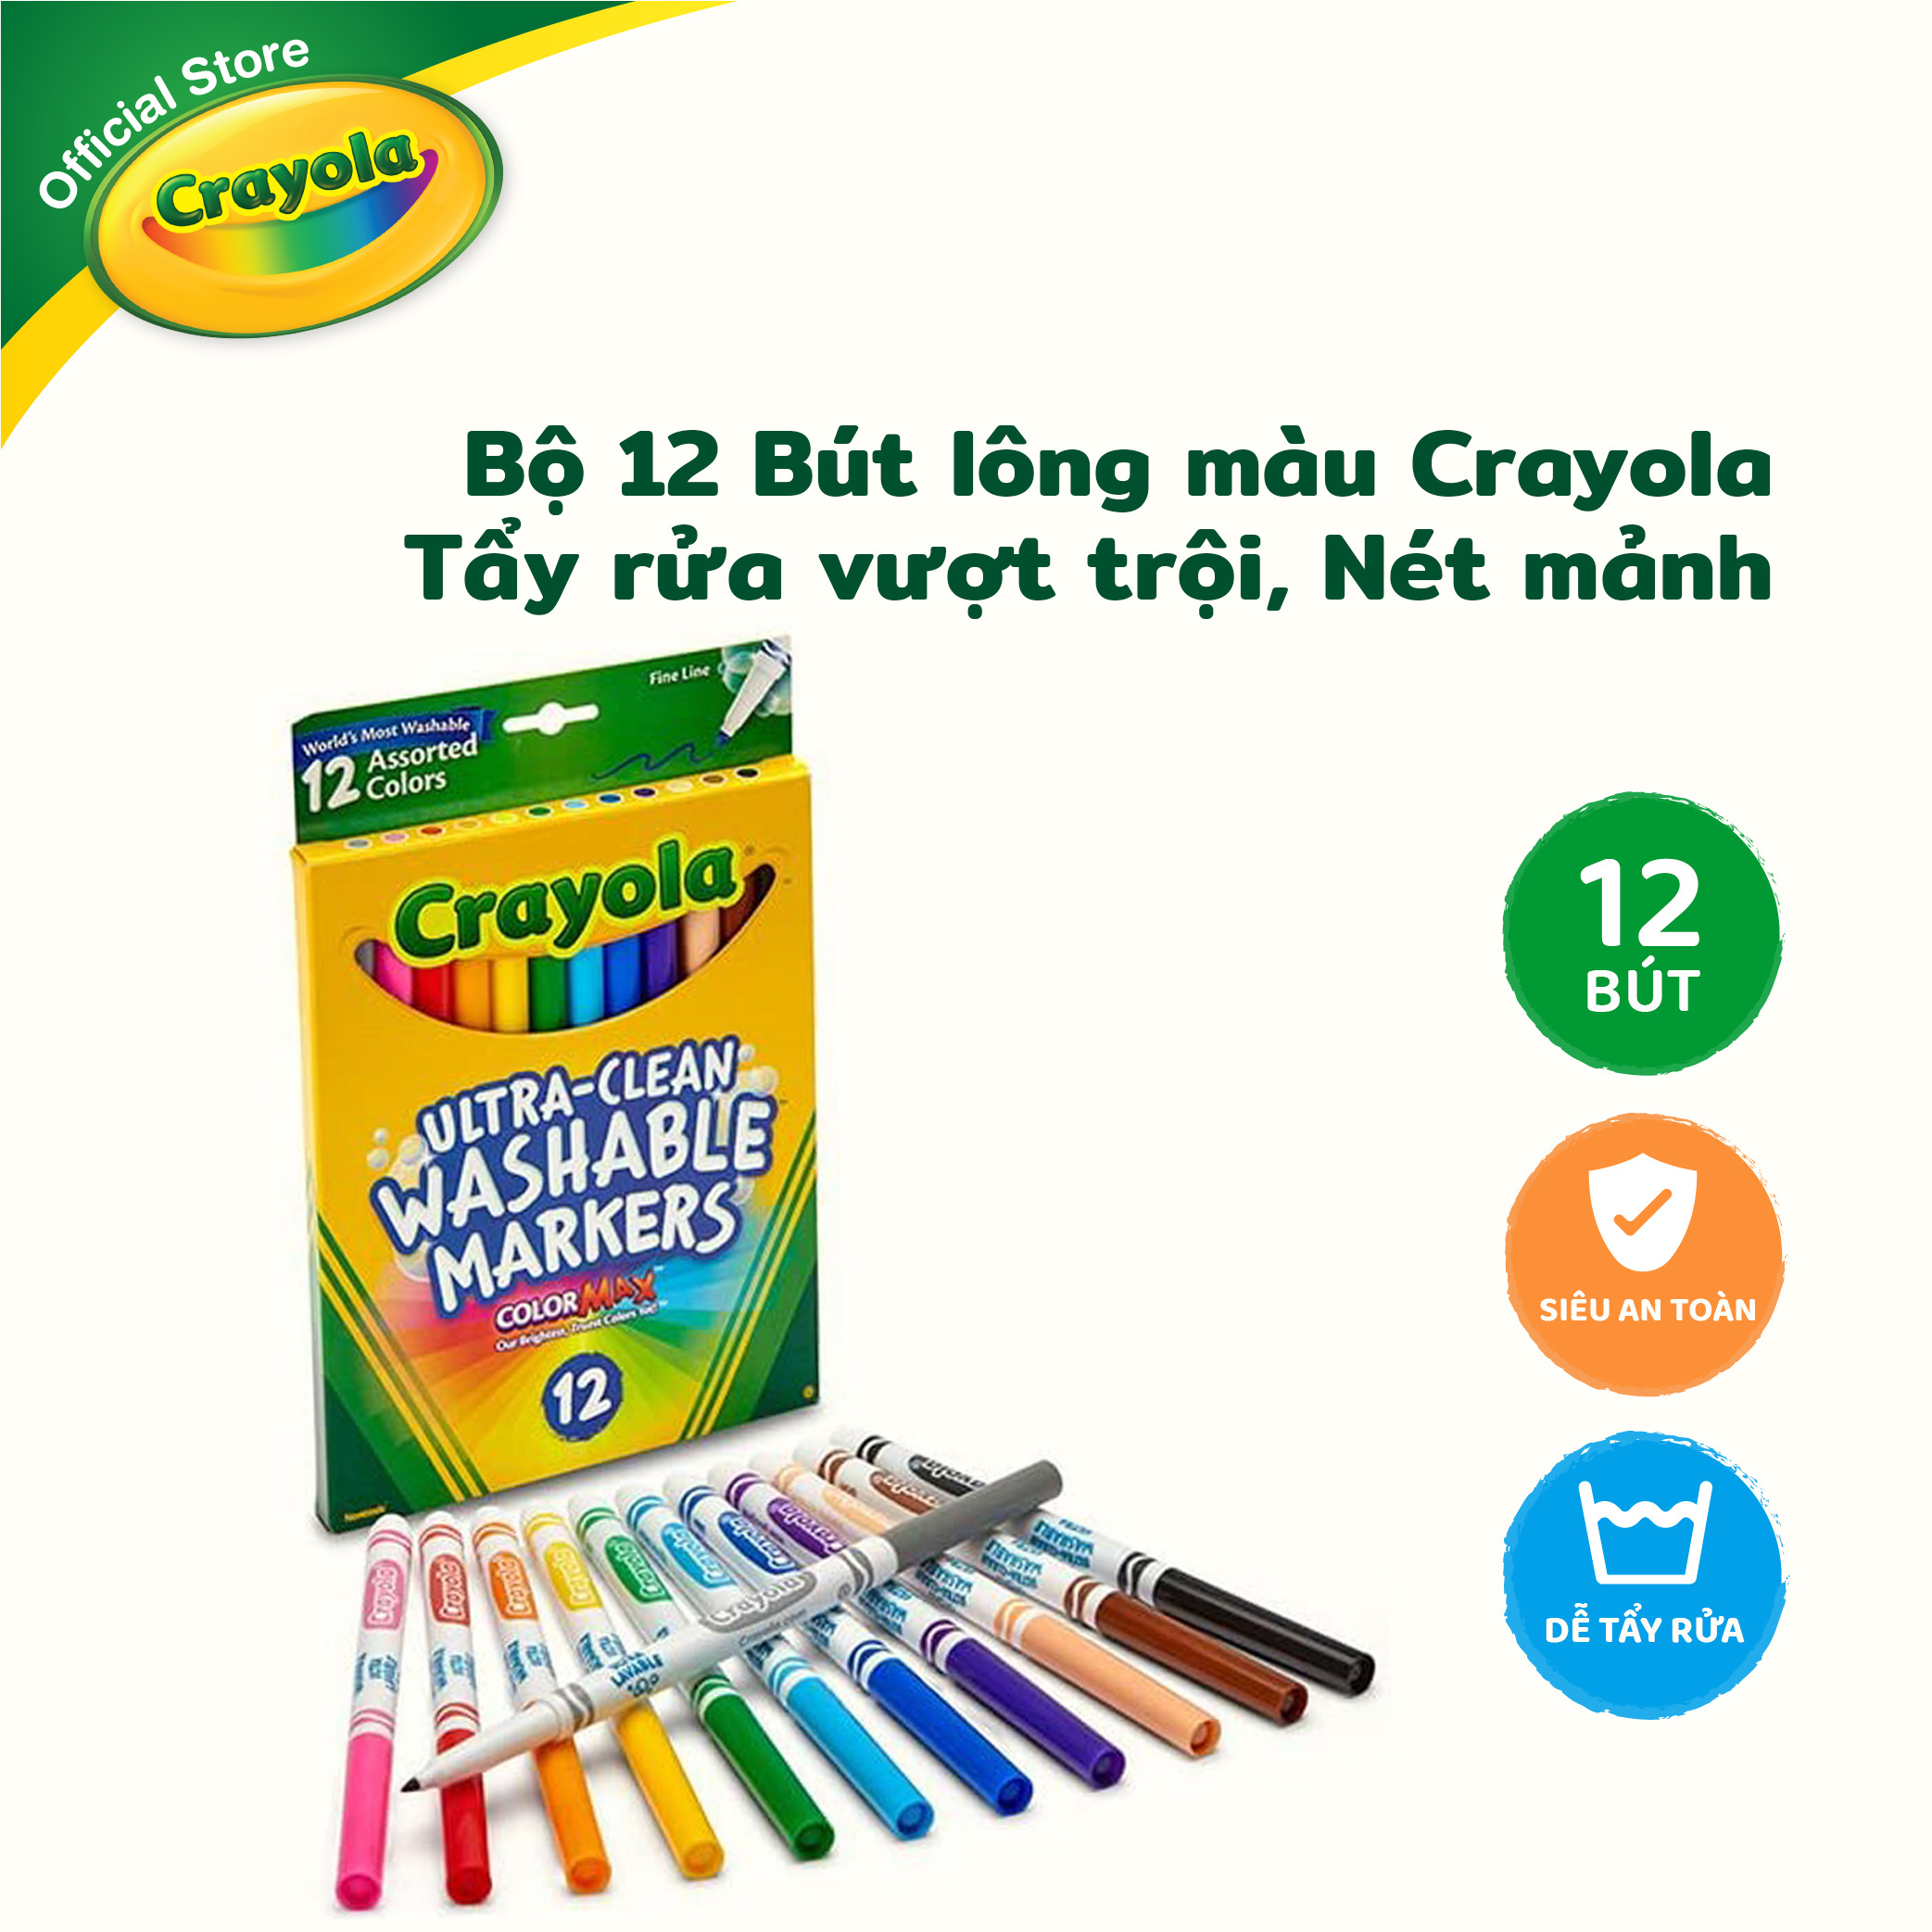 Bộ 12 Bút lông màu Crayola Tẩy rửa vượt trội, Nét mảnh - 587813